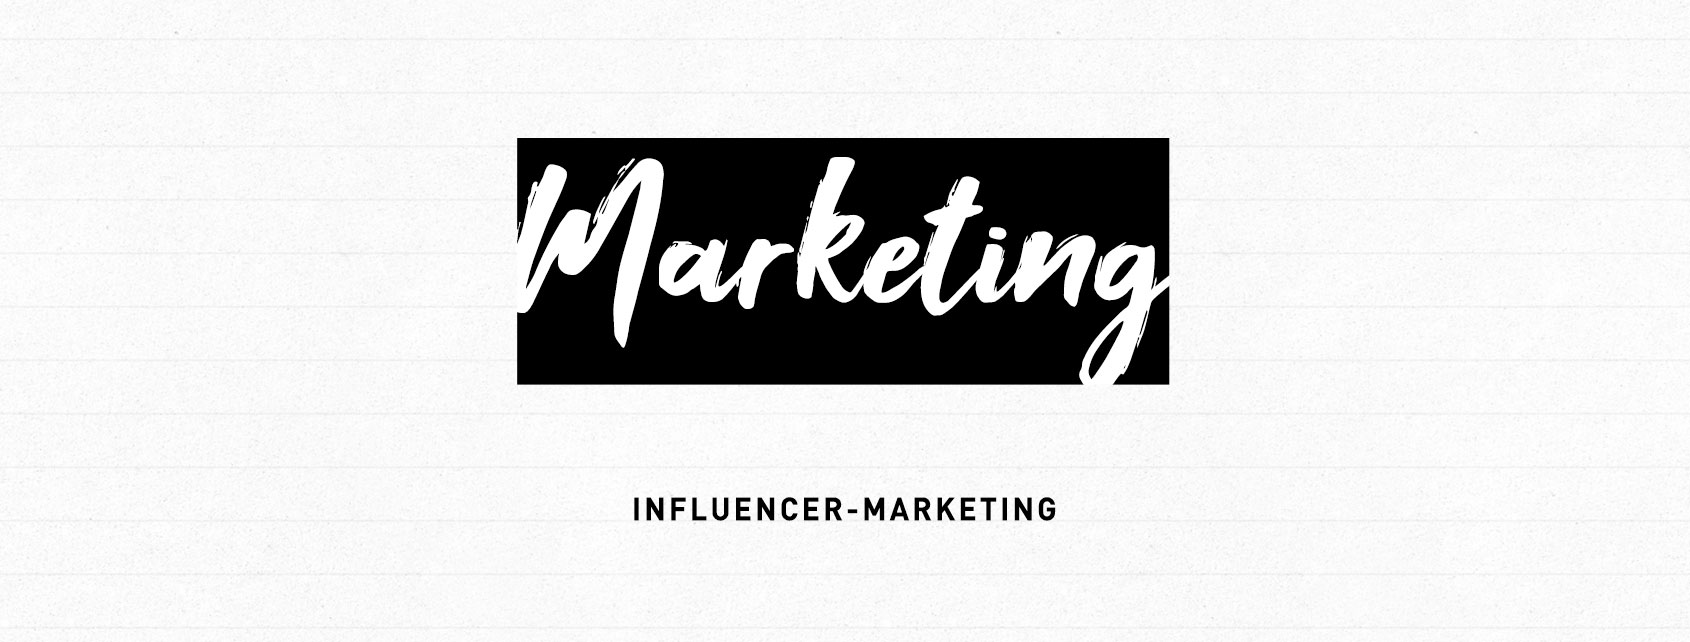 Influencer-Marketing - Auf dem Weg ins Neuland